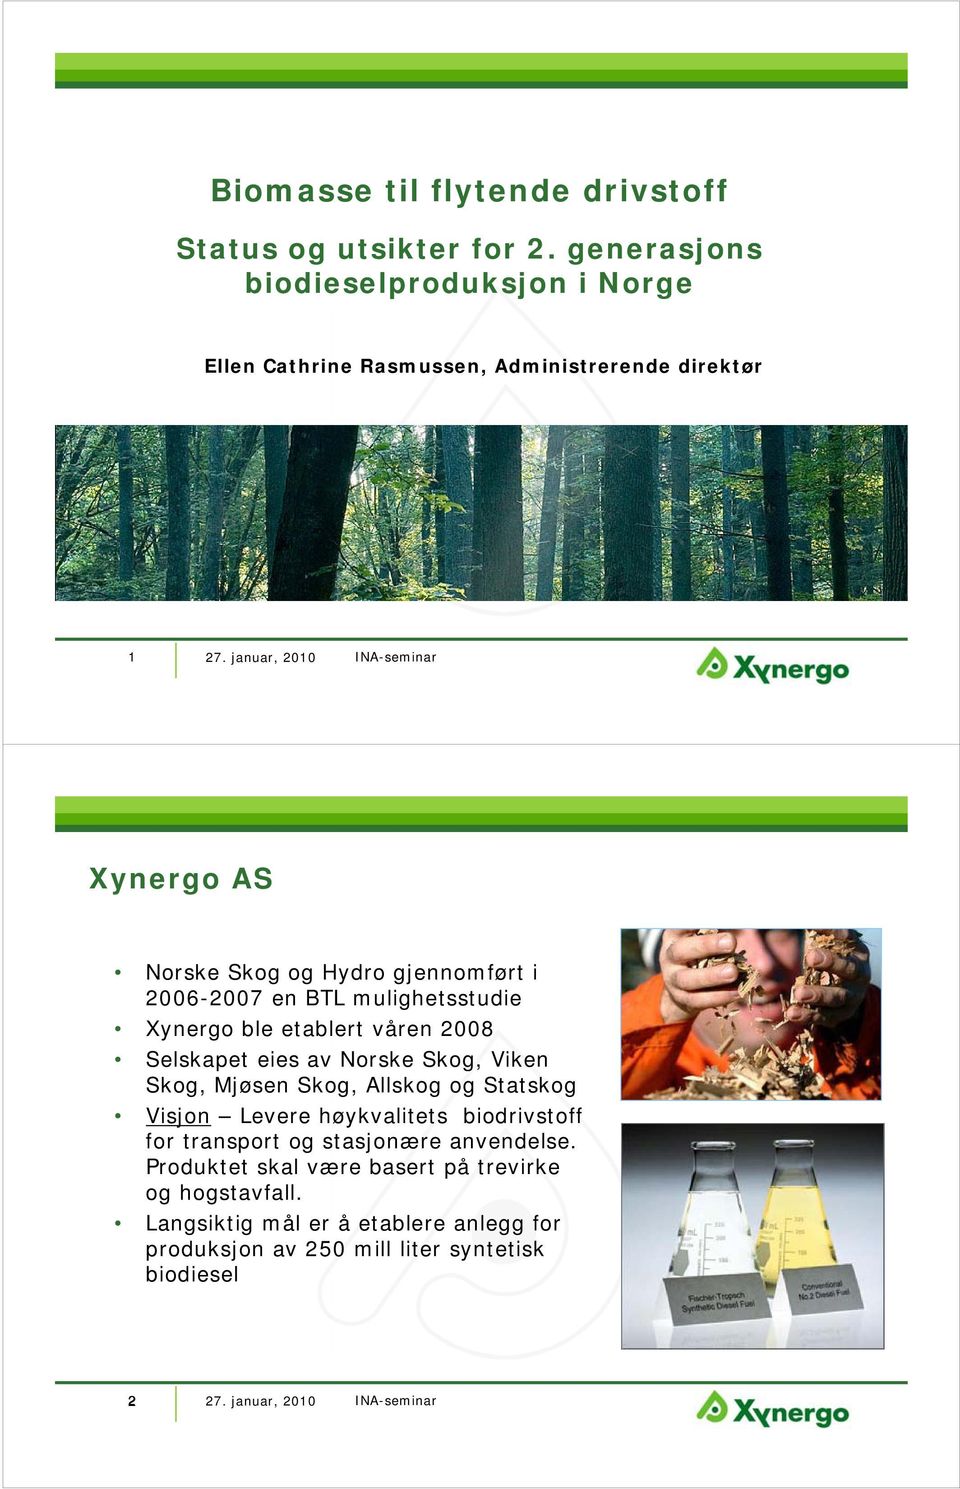 2006-2007 en BTL mulighetsstudie Xynergo ble etablert våren 2008 Selskapet eies av Norske Skog, Viken Skog, Mjøsen Skog, Allskog og